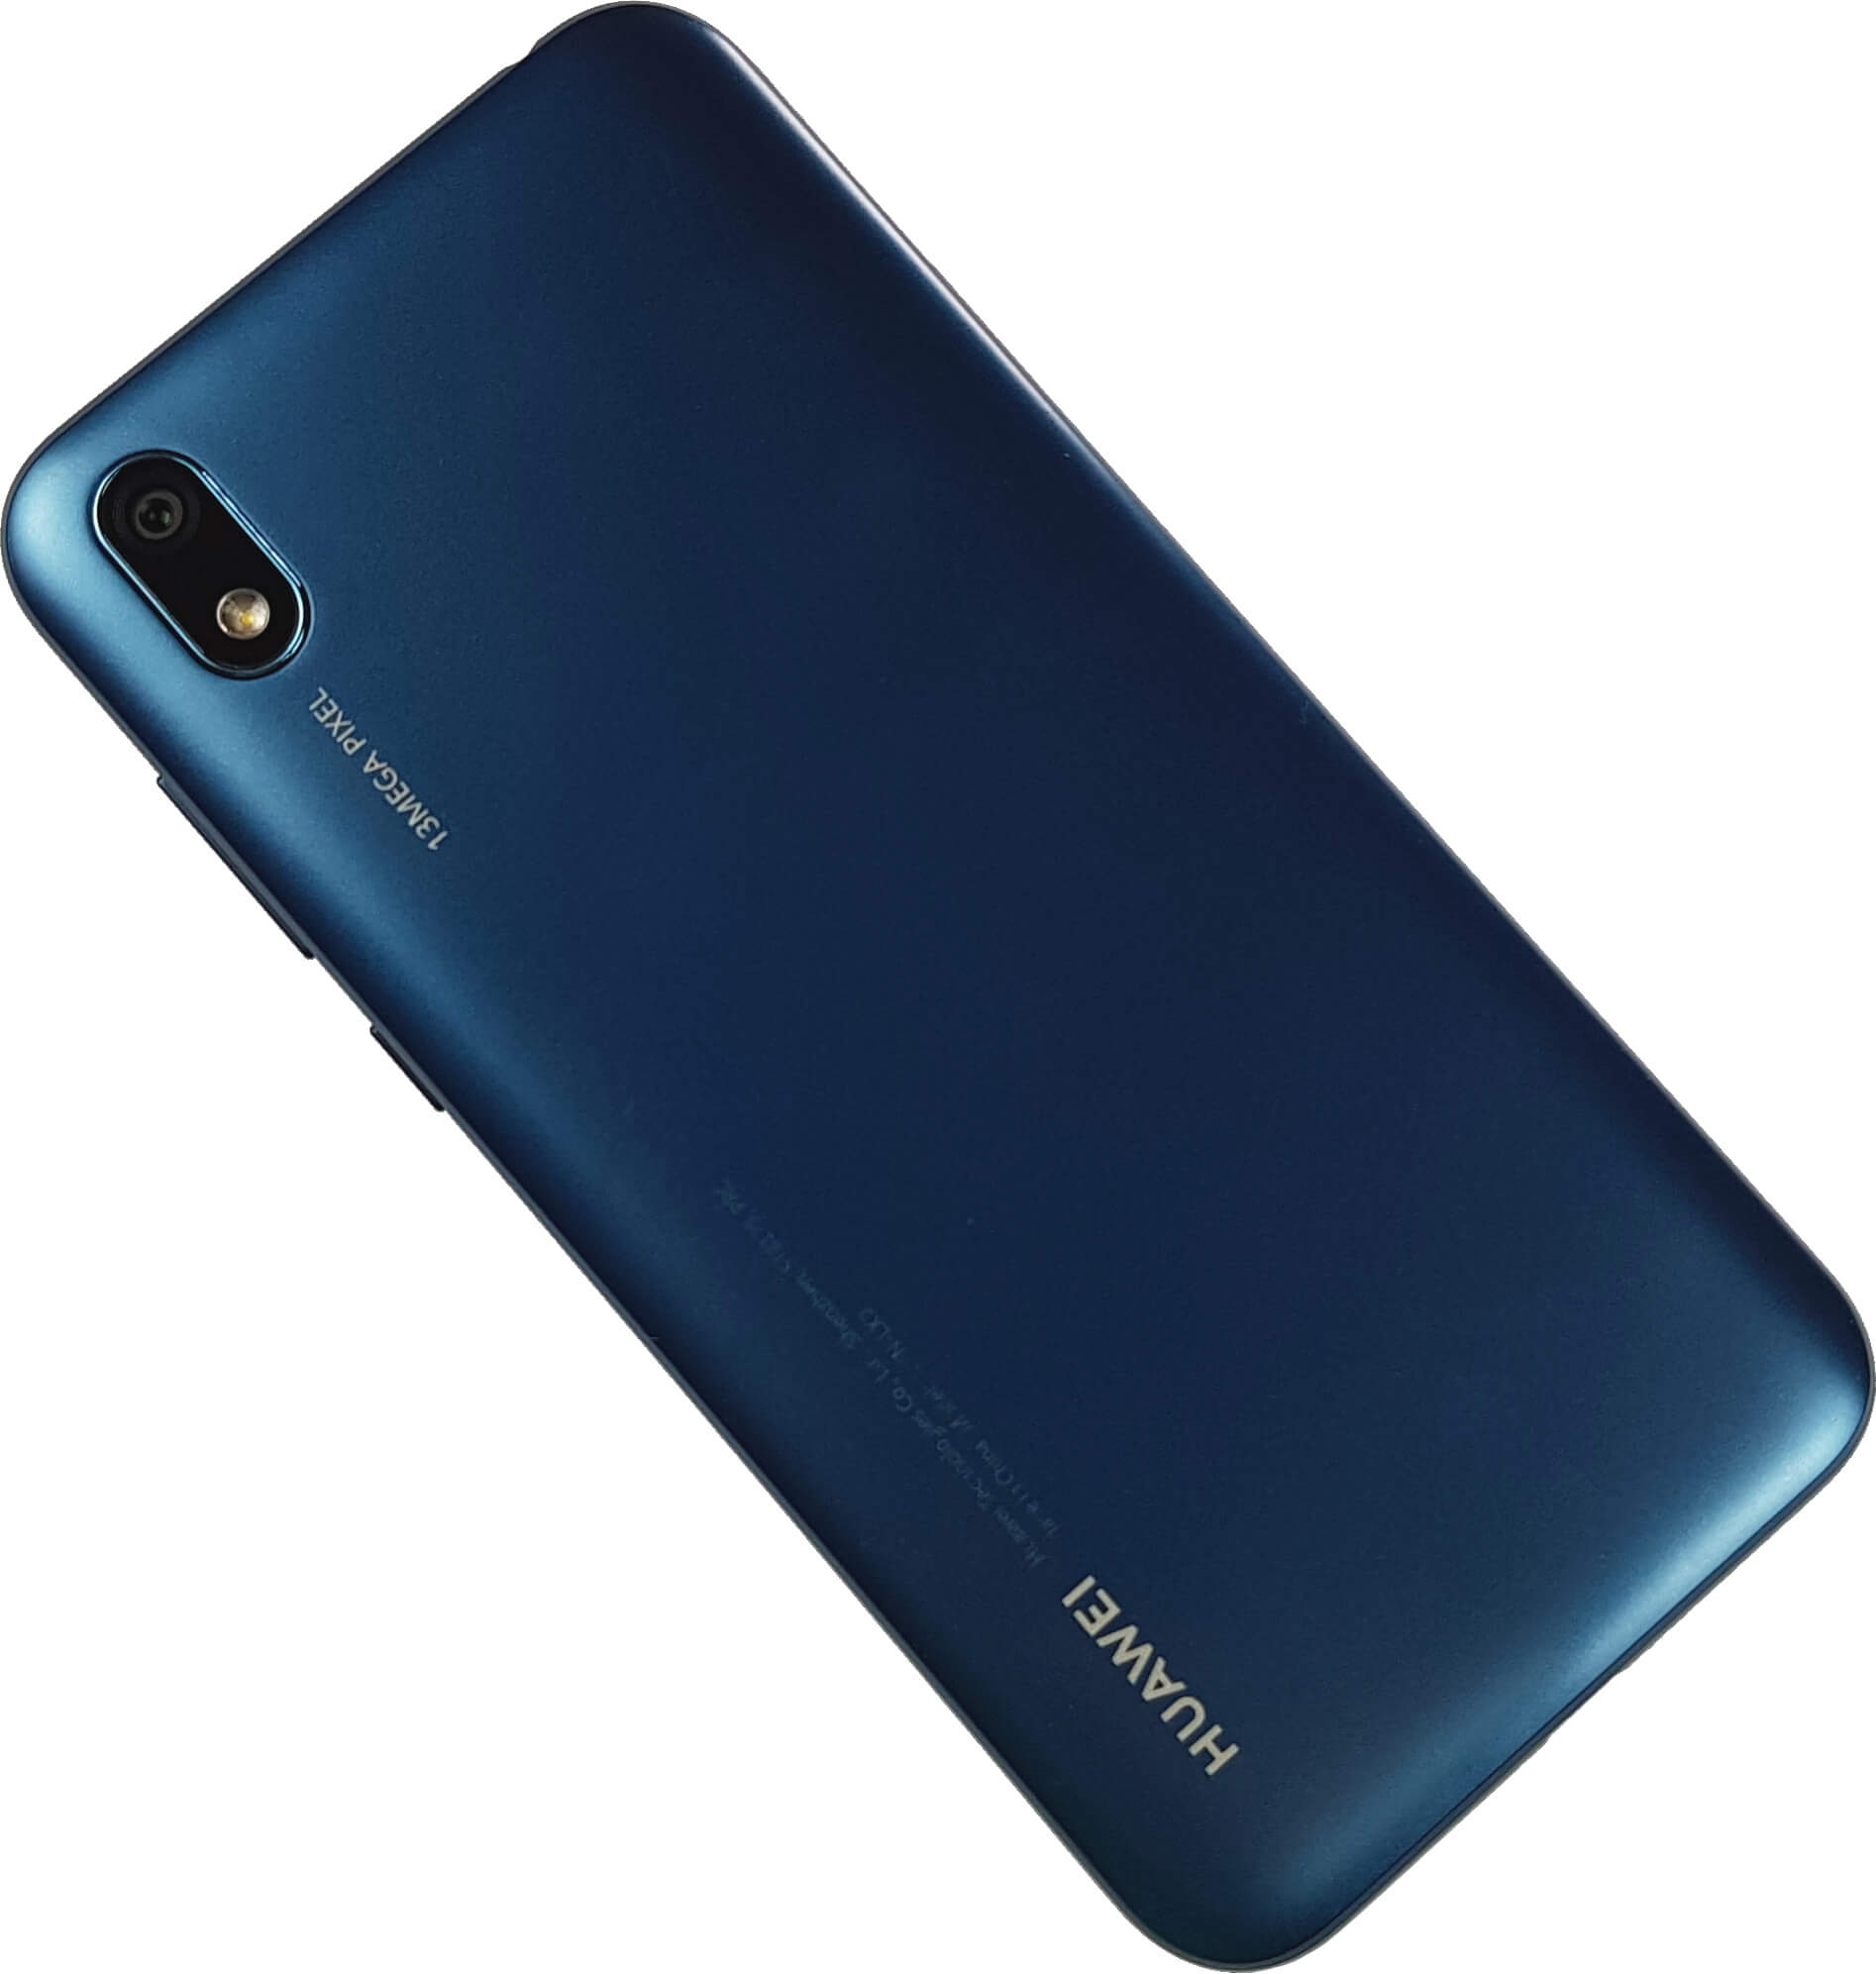 Review Huawei Y5 2019: La Gama baja de Huawei promete